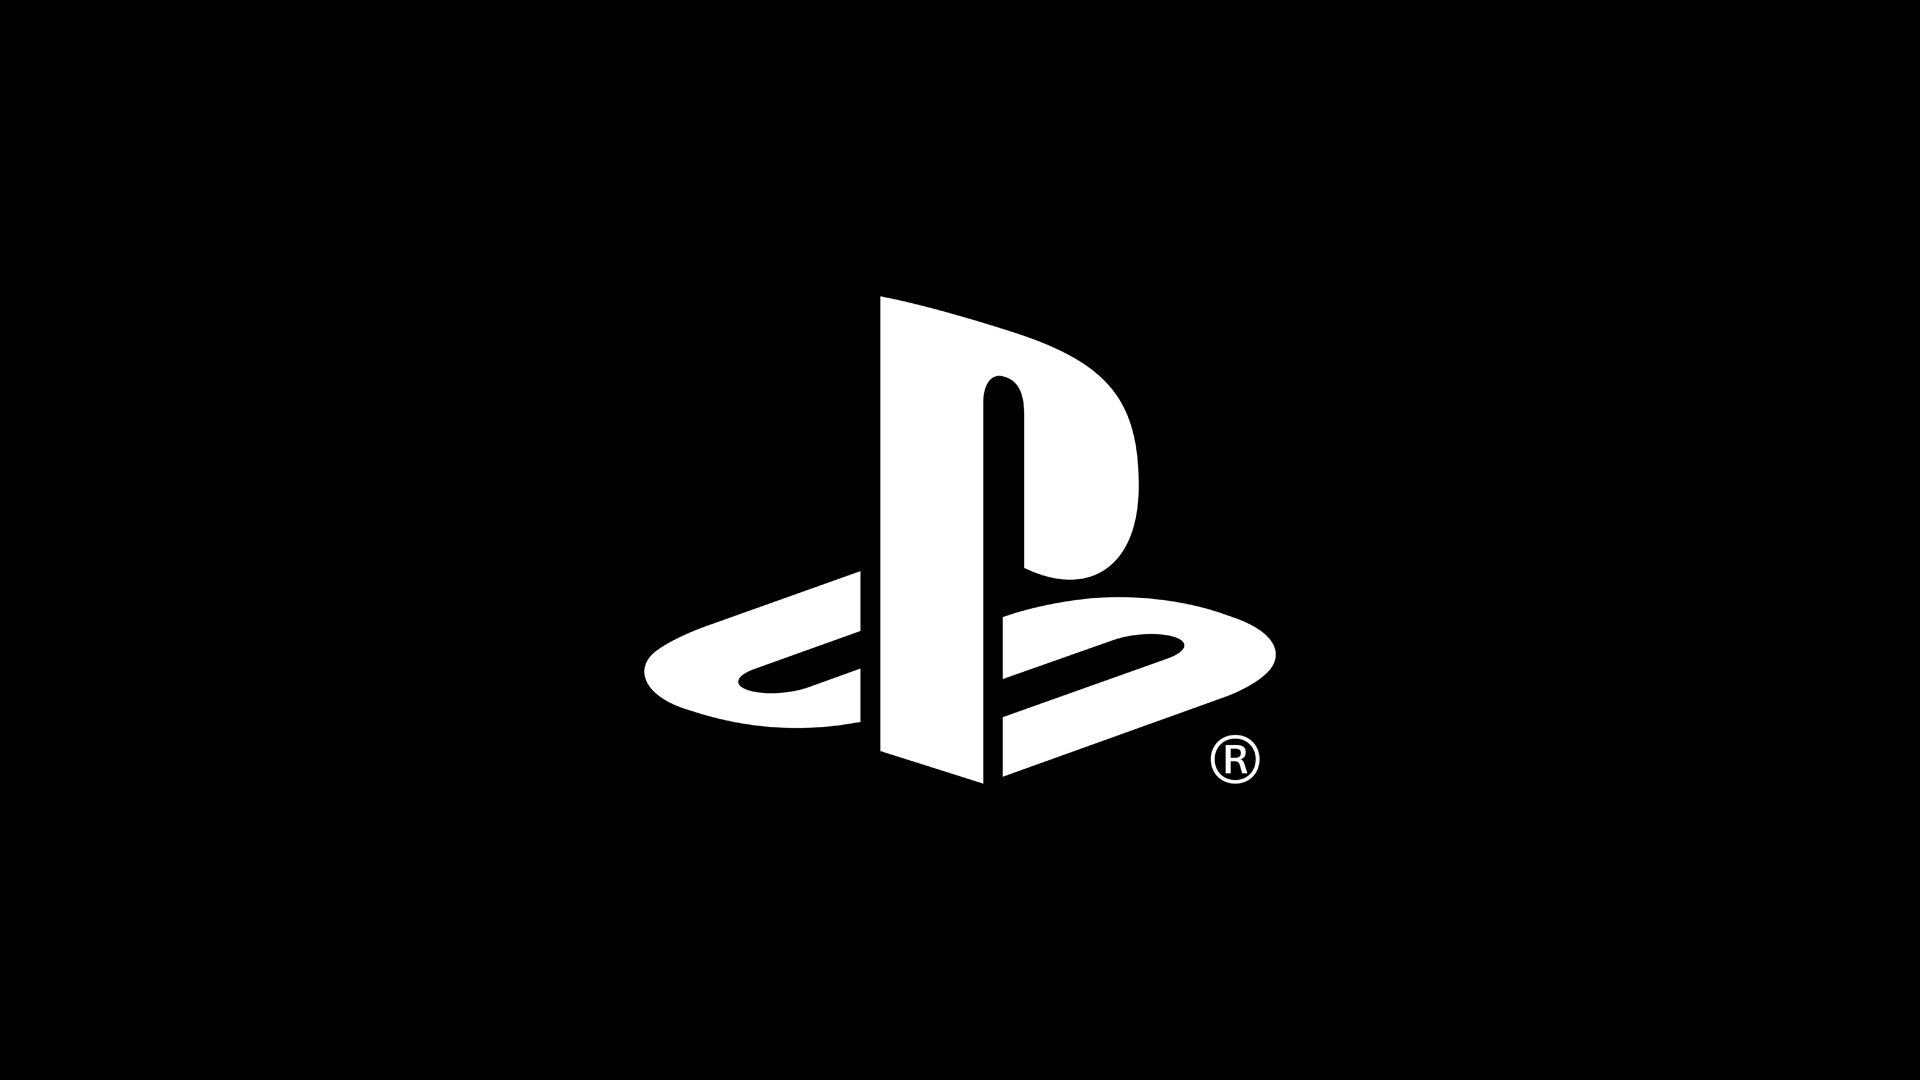 Commentaires sur Le PlayStation Store sur PS3 et PS Vita ne fermera pas par egehanoxx_93